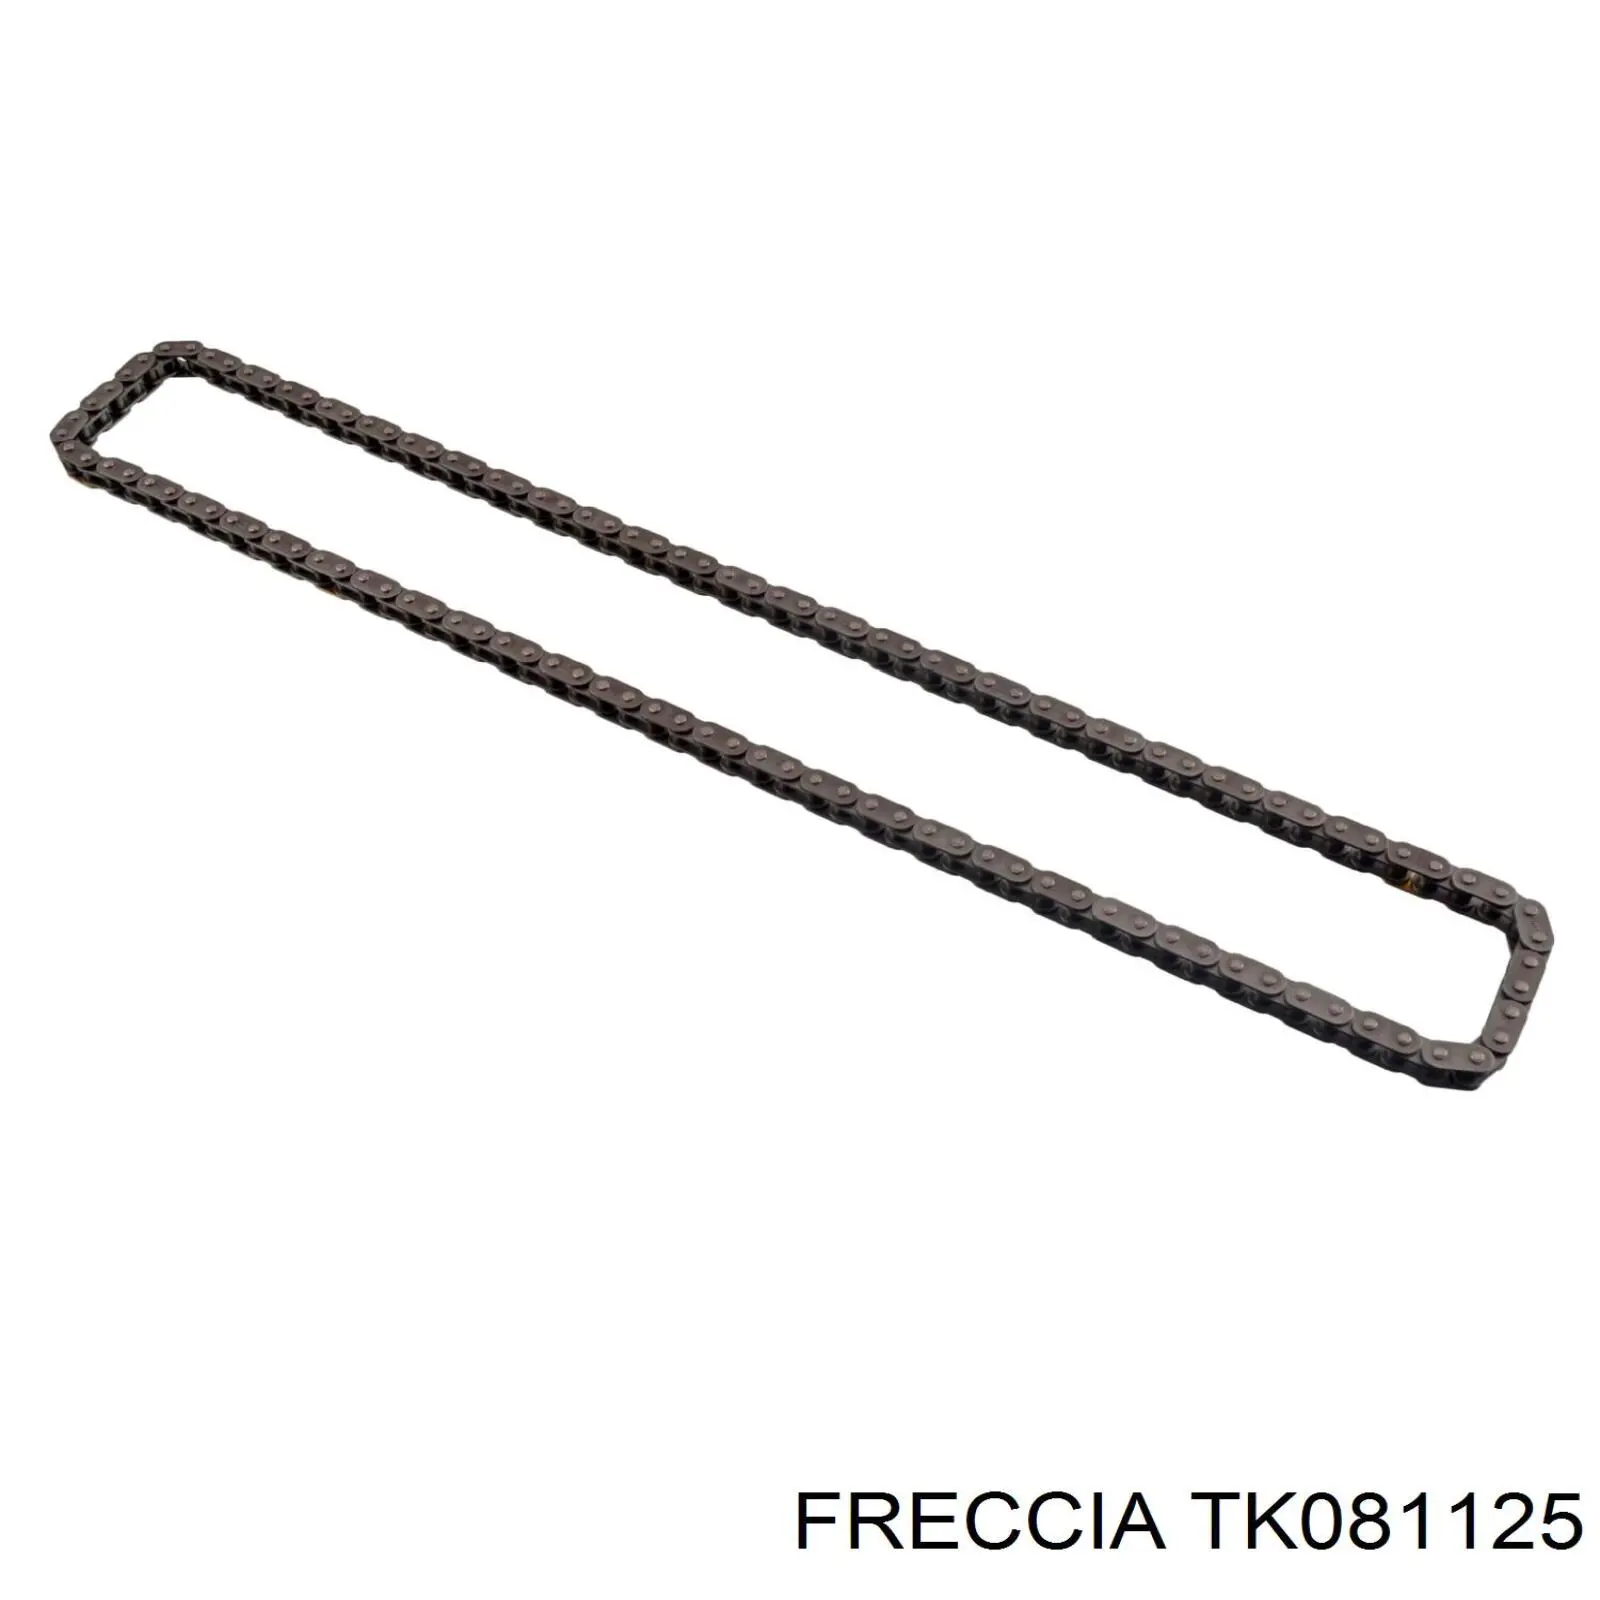 TK081125 Freccia ланцюг грм, комплект